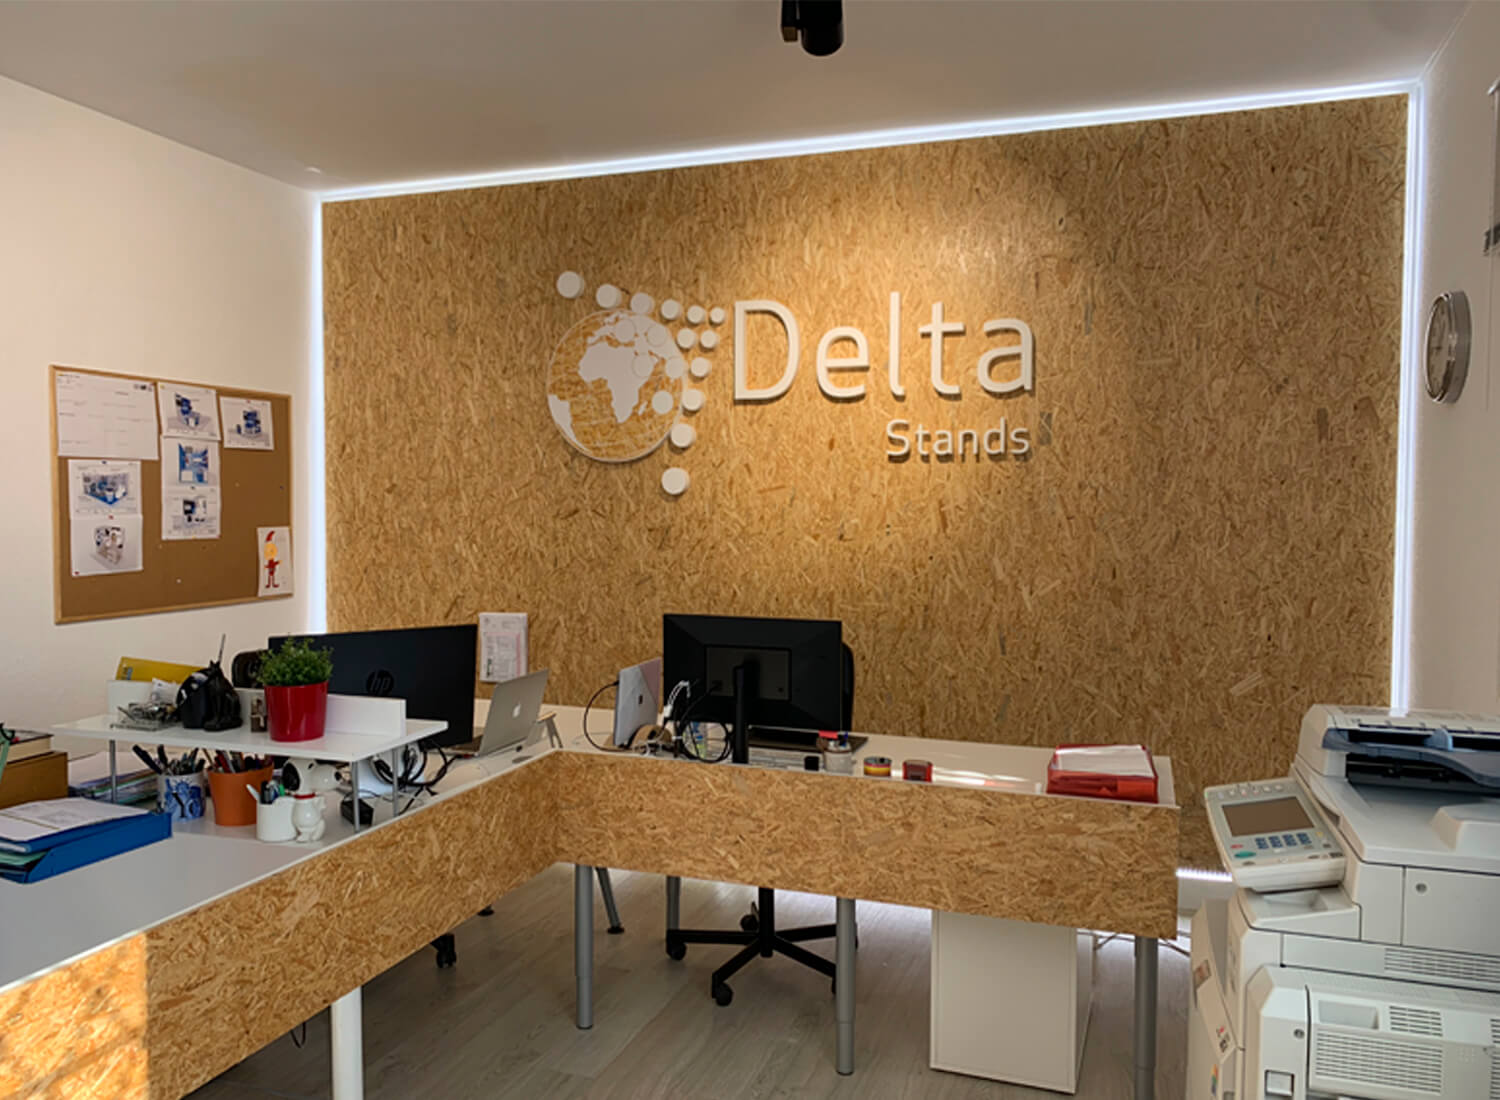 Oficina de Delta design and events